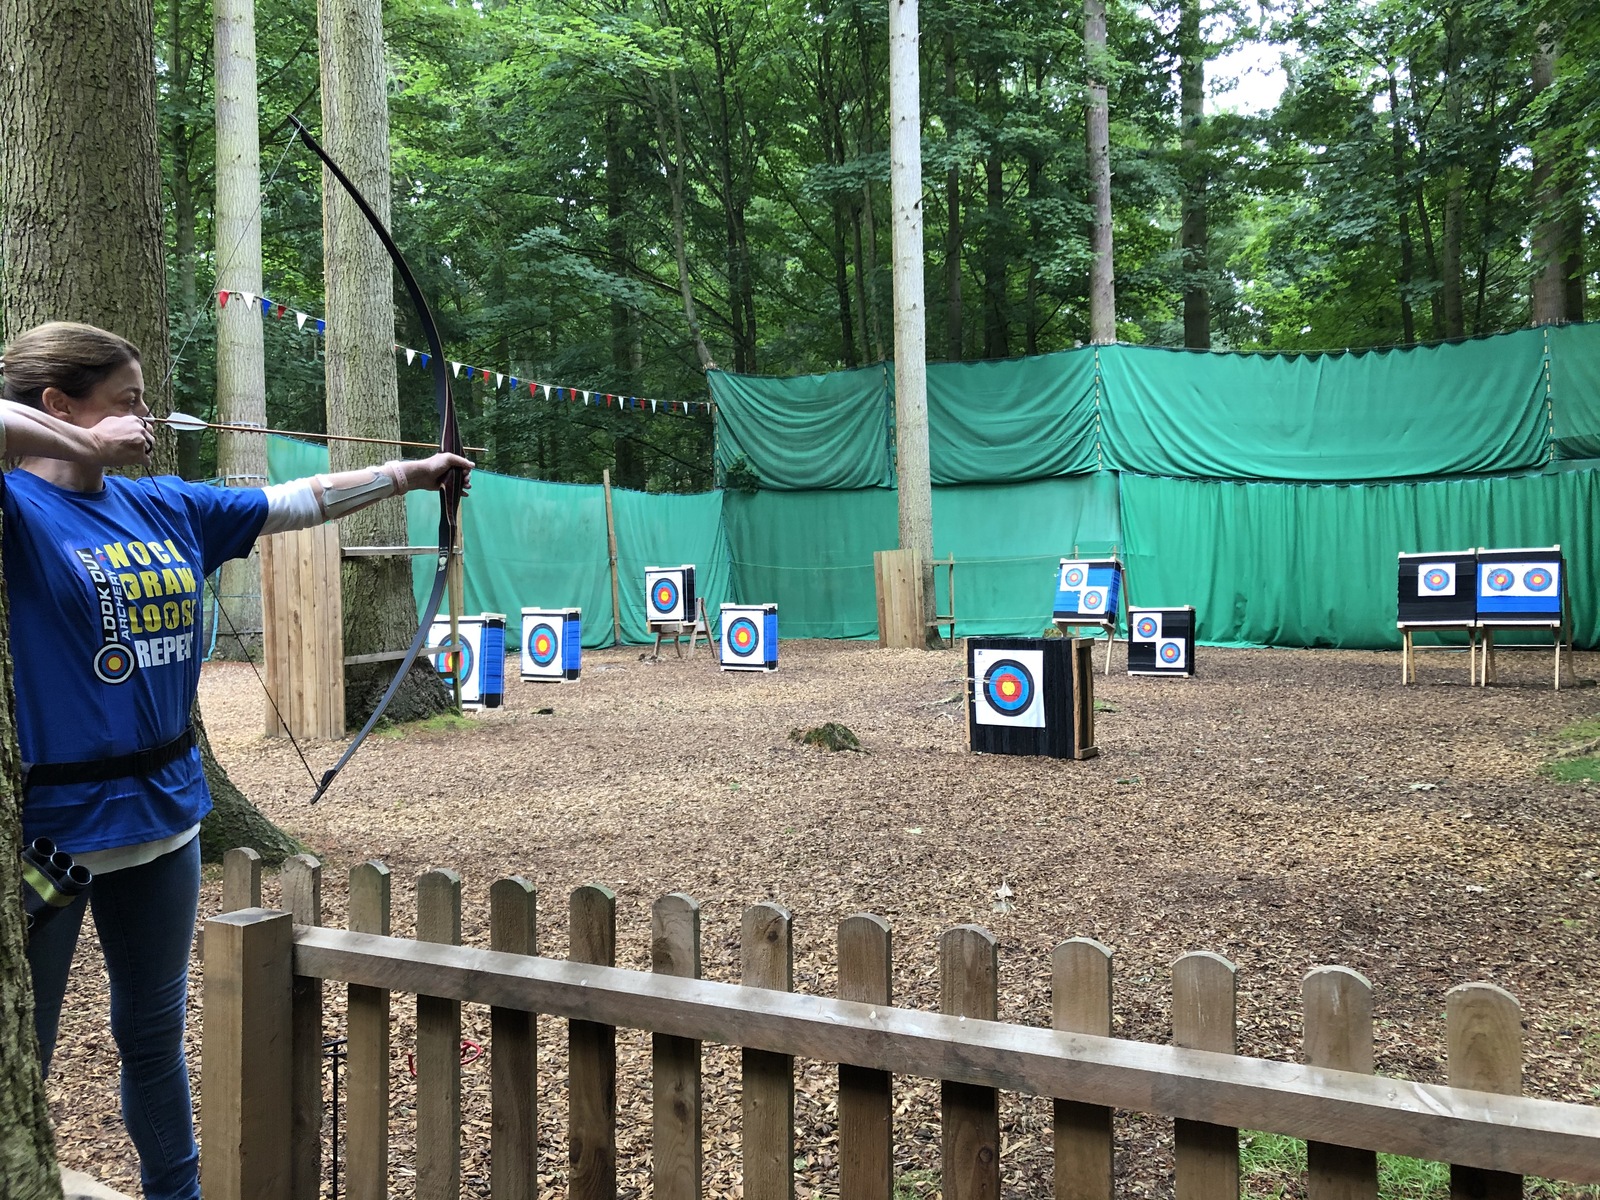 Archer taking aim at outdoor range